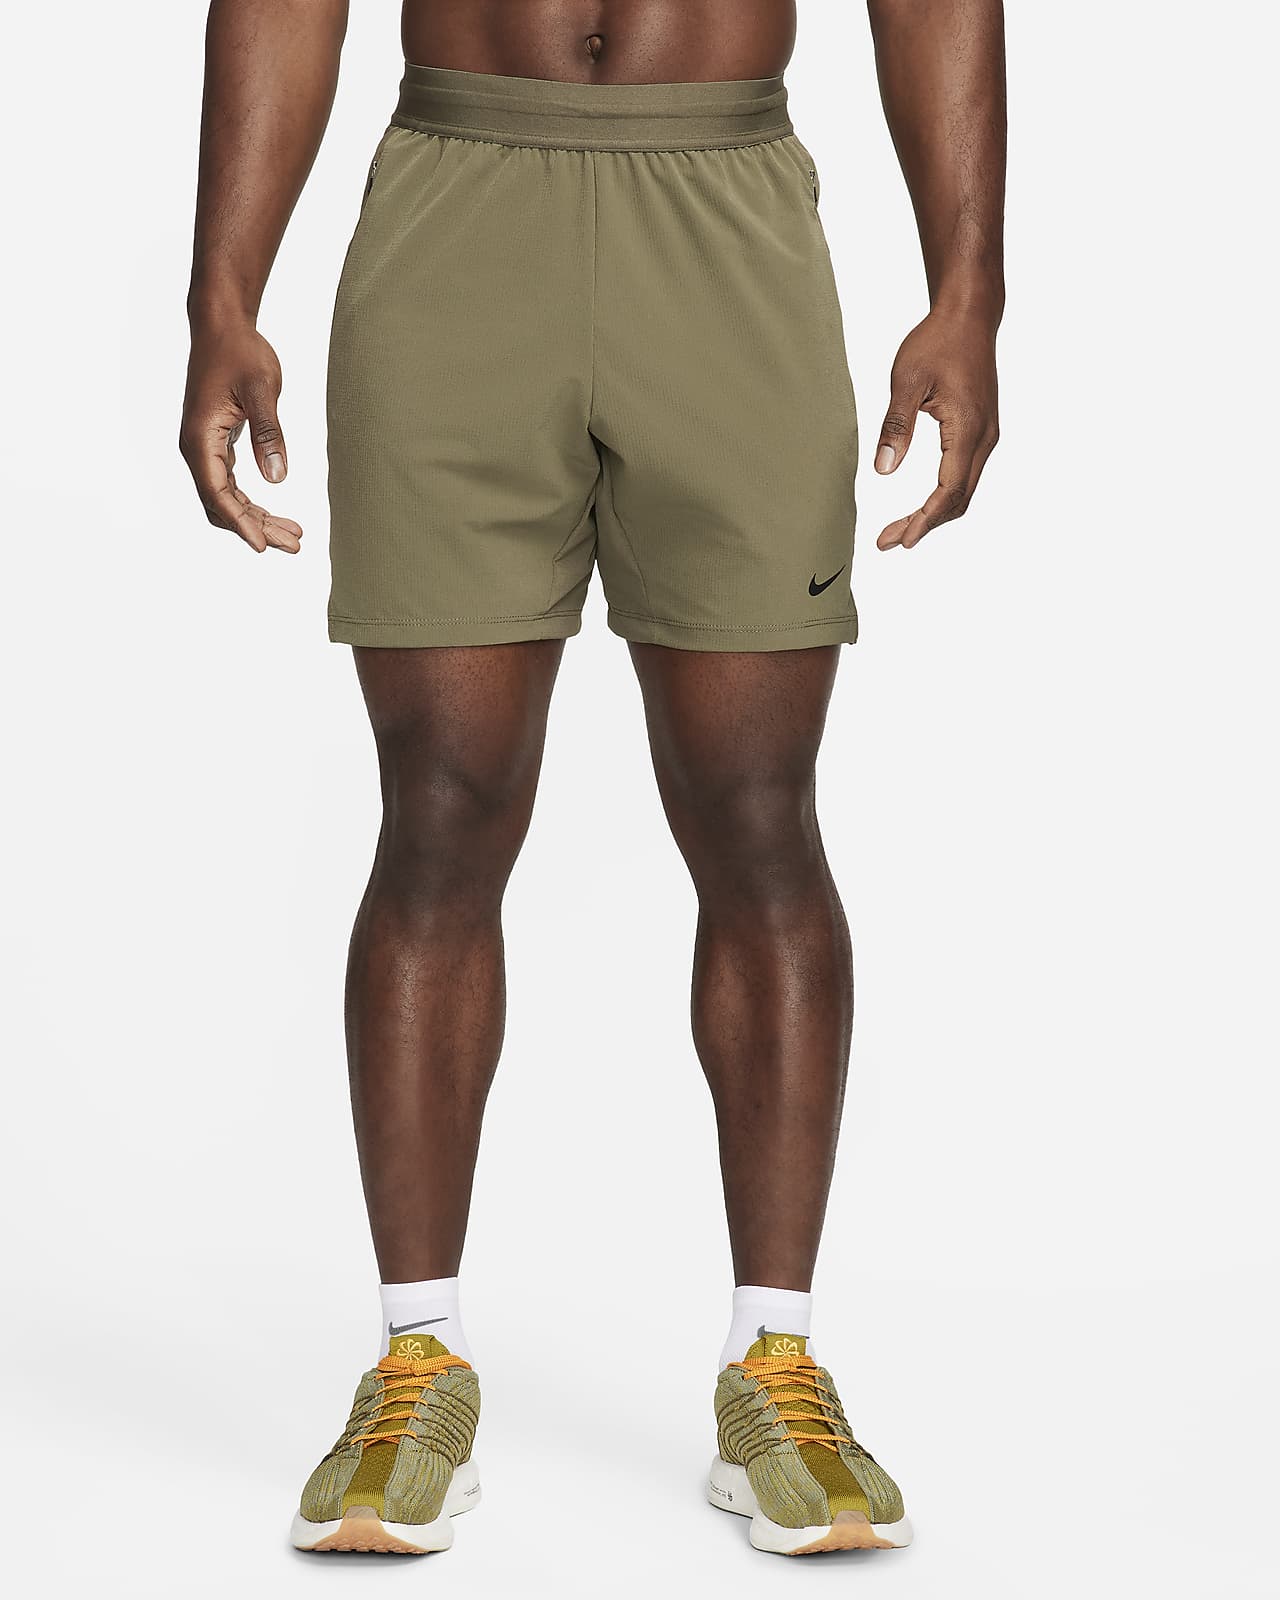 Shorts da fitness Dri-FIT non foderati 18 cm Nike Flex Rep 4.0 – Uomo